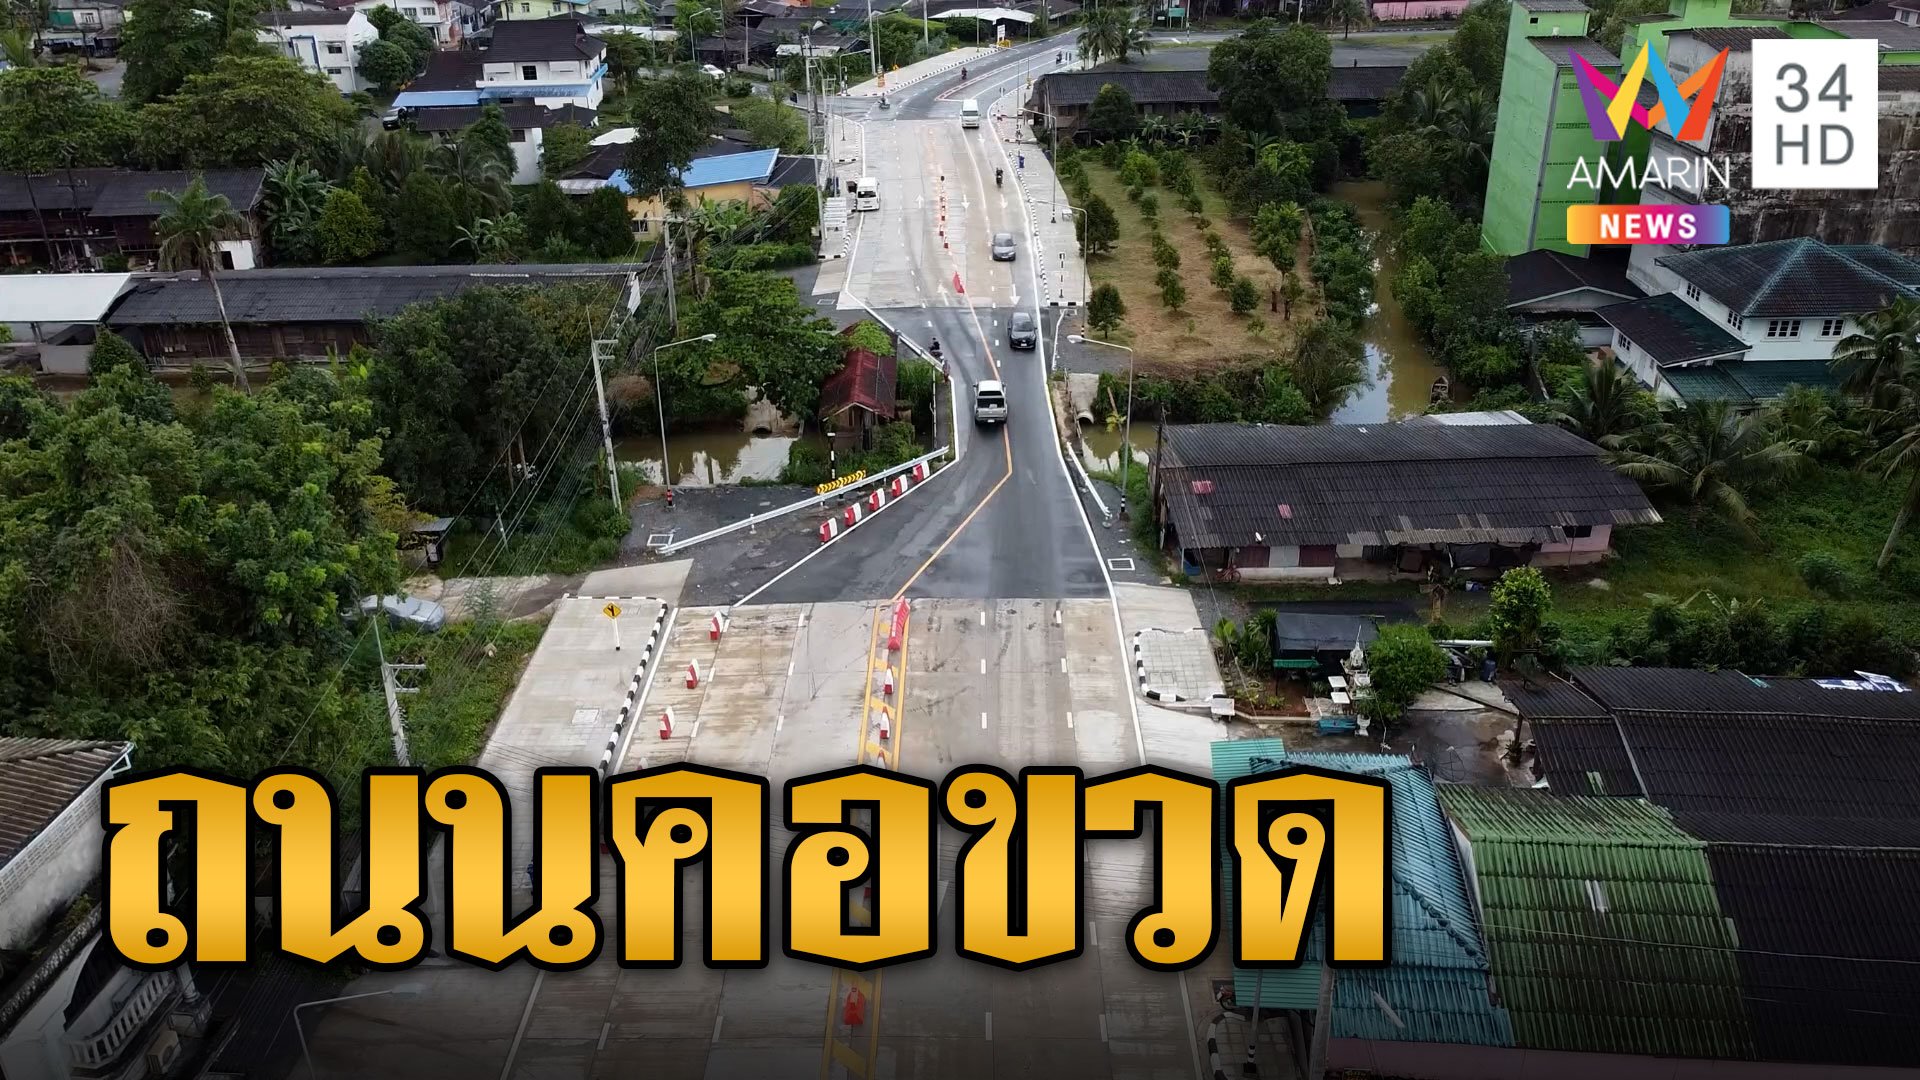 งบยังมาไม่ถึง! ขยายถนน แต่ไม่ขยายสะพาน รถติดอยู่ตรงคอขวด | ข่าวเที่ยงอมรินทร์ | 21 ก.ย. 66 | AMARIN TVHD34